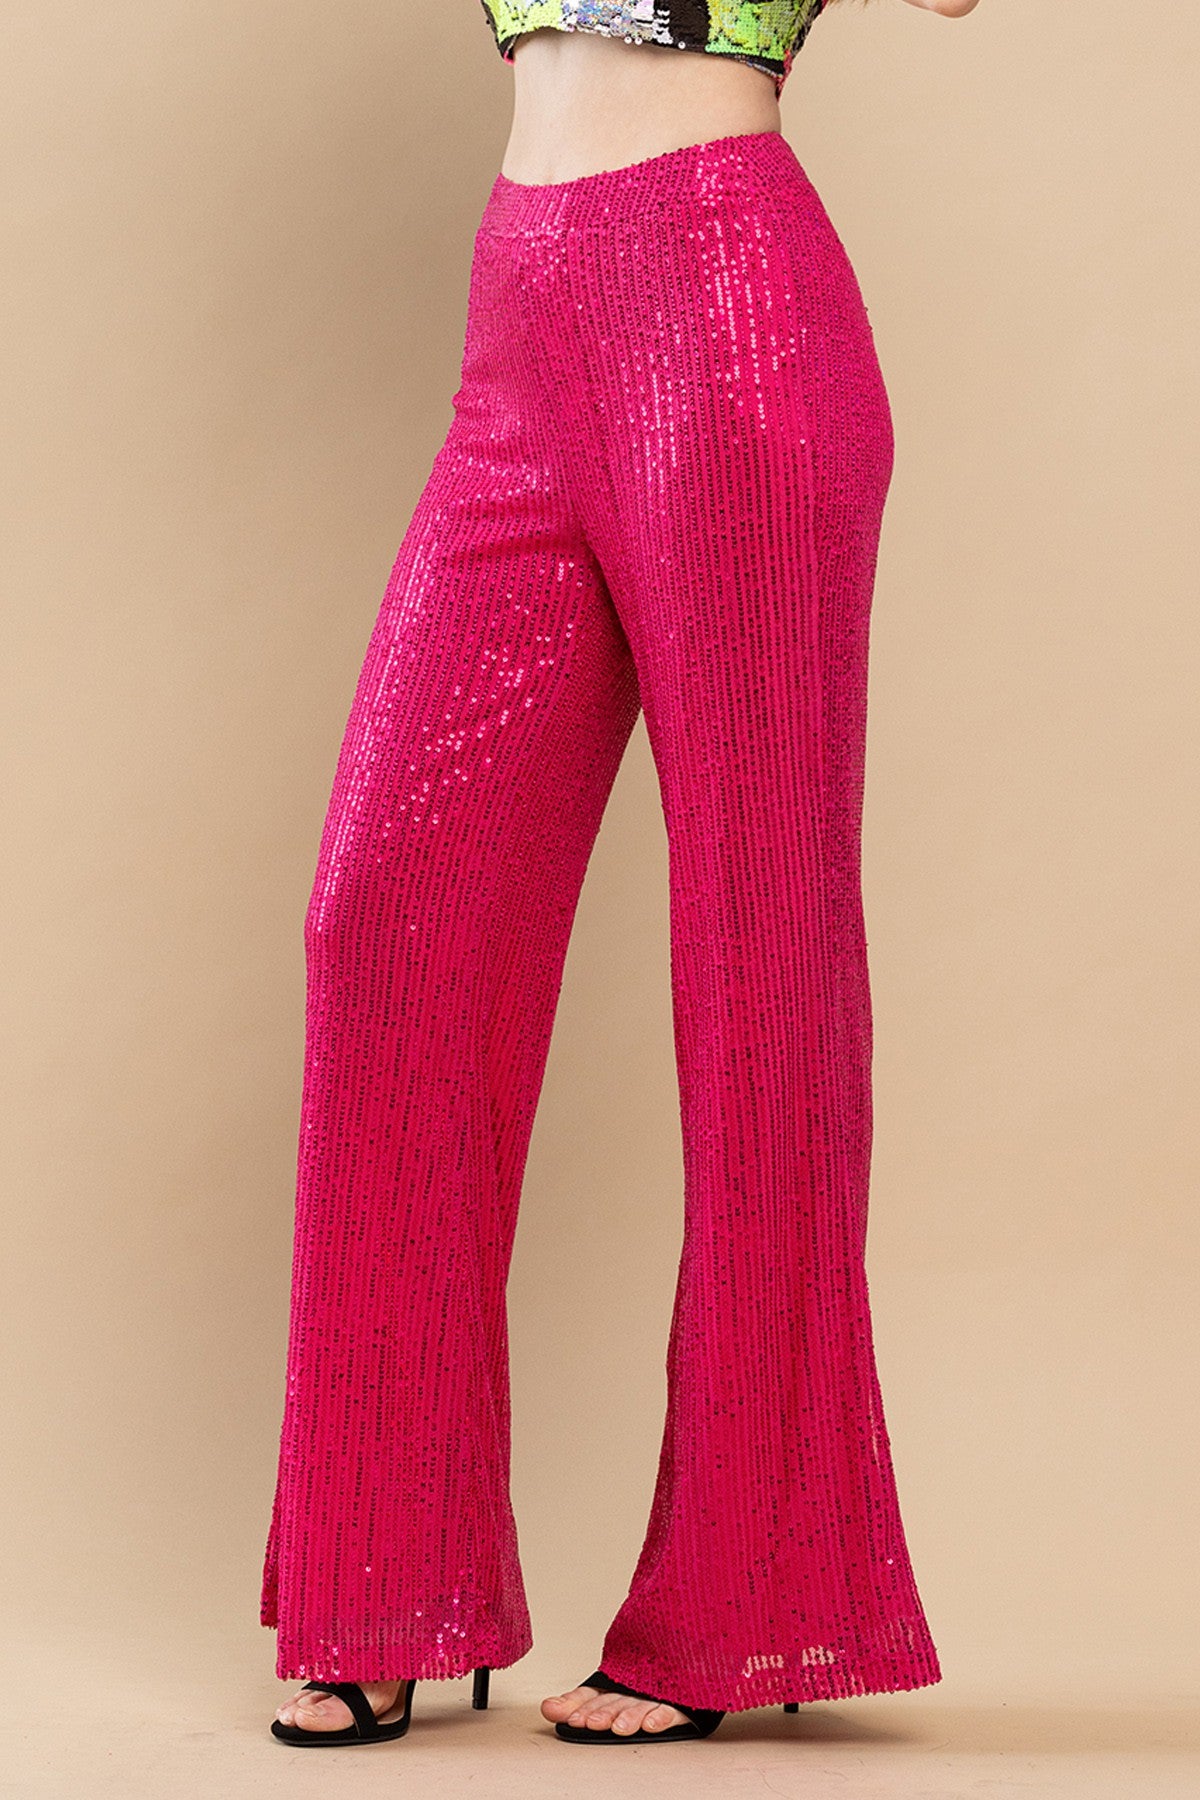 Pant Suit Sequins Jacket 3 Piece Set Pink/Pink Combo